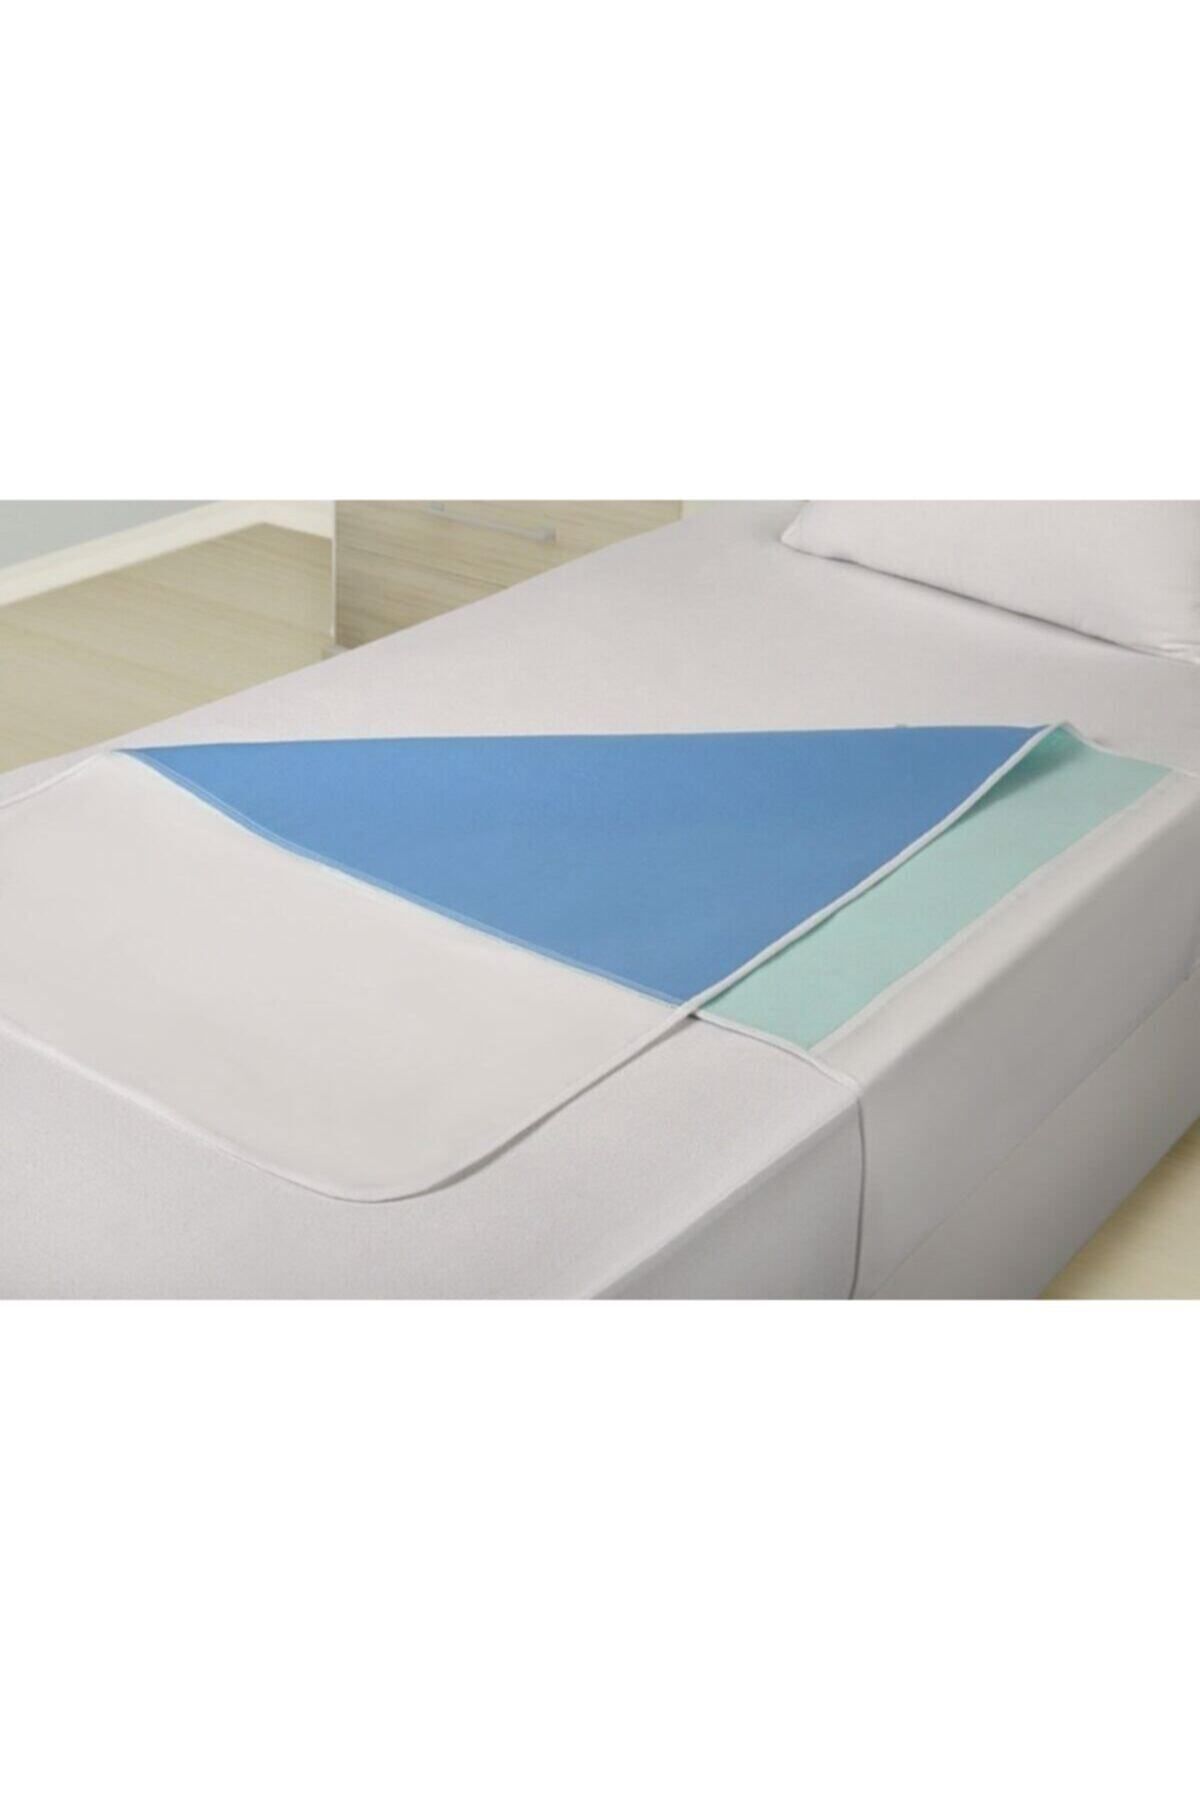 CDE Abso (3 LÜ PAKET) Yıkanabilir Emici Sıvı Geçirmez Kanatlı Yatak Koruyucu 75x90 Cm